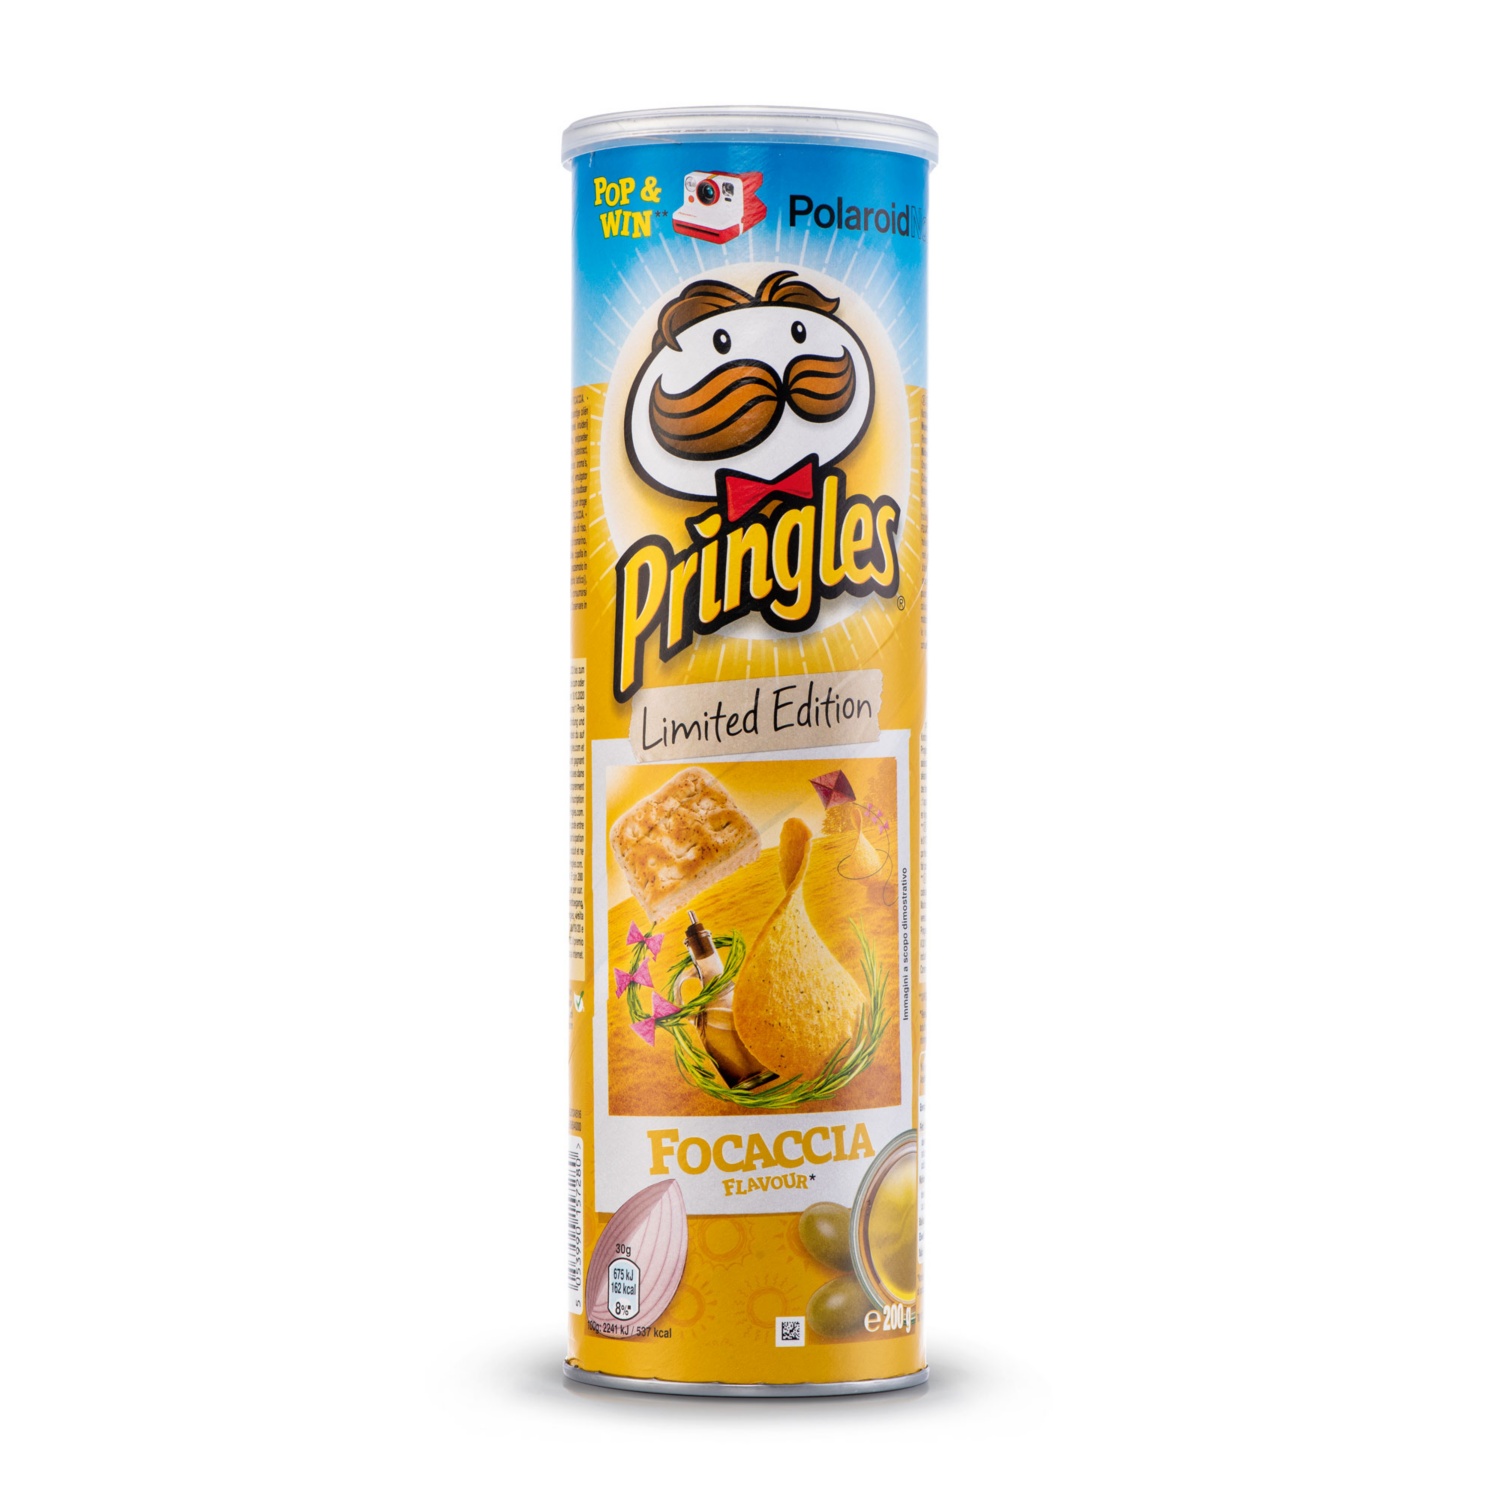 Pringles Limited Summer Edition, Italian Foccacia